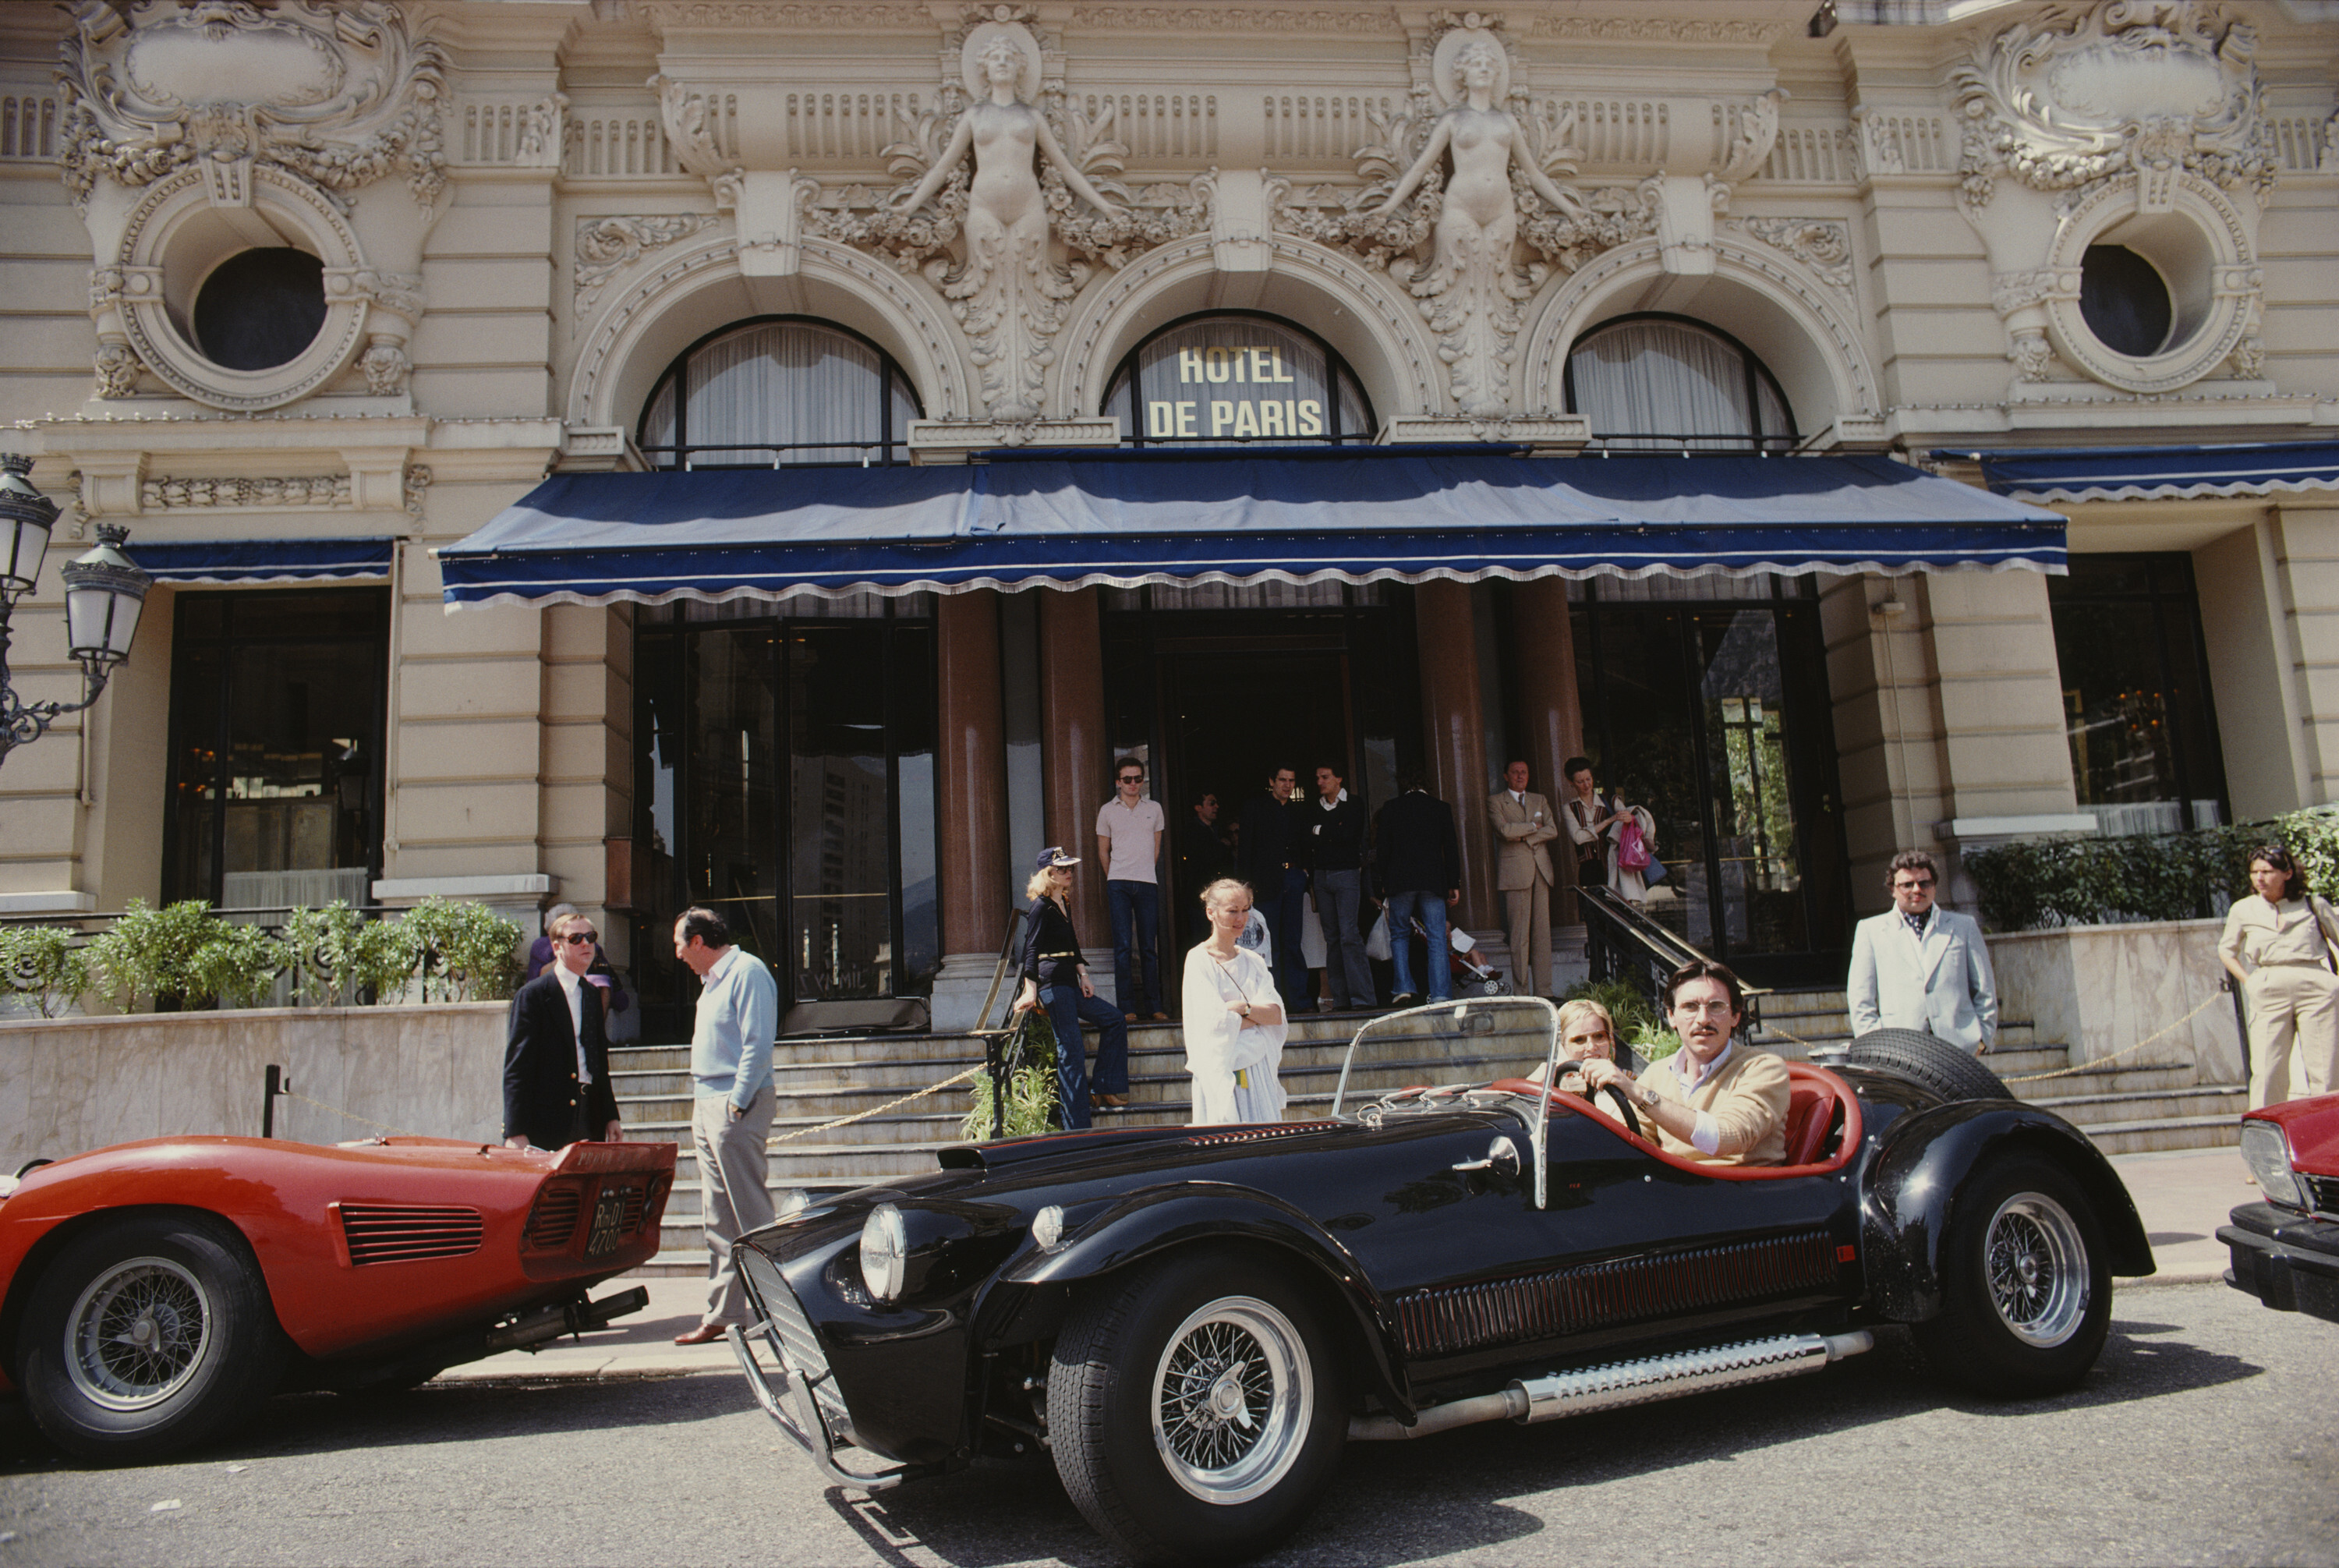 Отель De Paris в Монако, 1977 год. Фотограф Слим Ааронс